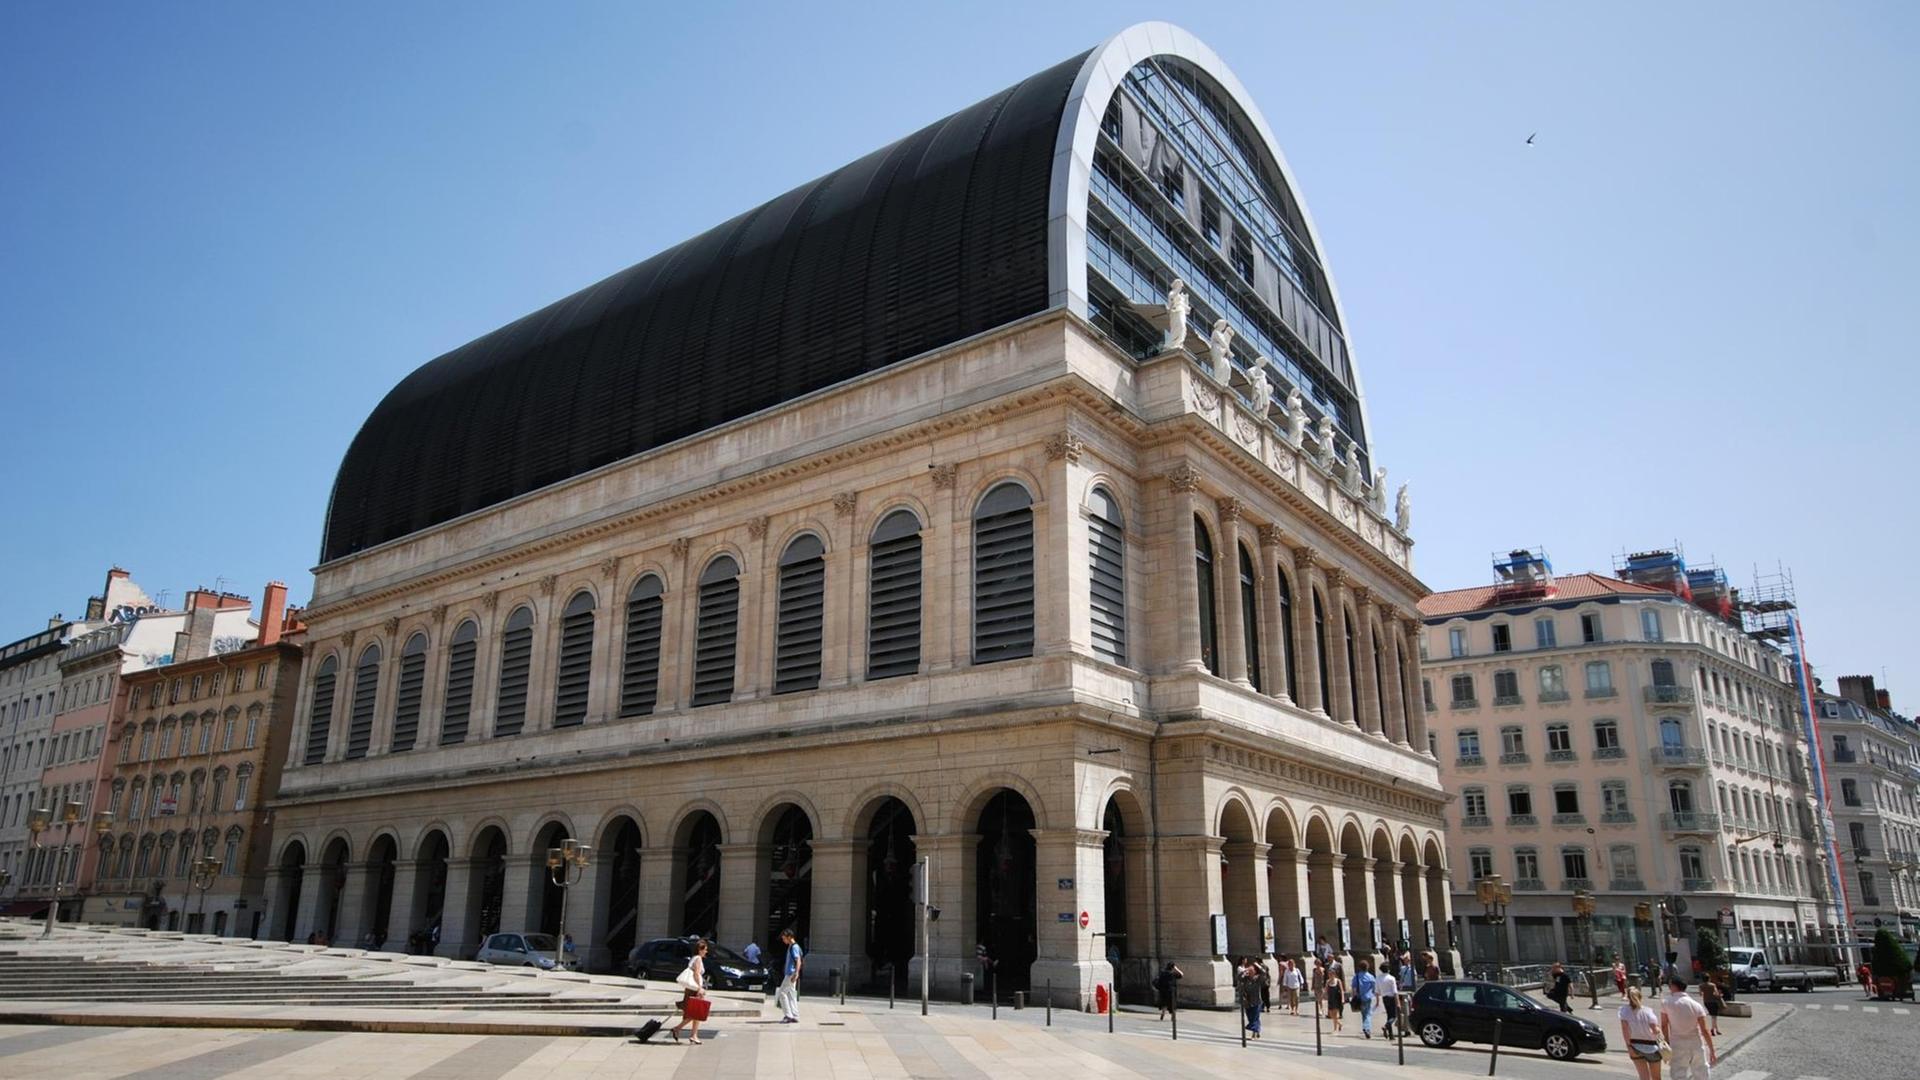 Die heutige Opera Nouvel in Lyon wurde nach dem französichen Architekten Jean Nouvel benannt, der auf ein altes Operngebäude aus dem Jahr 1756 ein tonnenfömiges Obergeschoss zwischen 1985 und 1993 setzte.